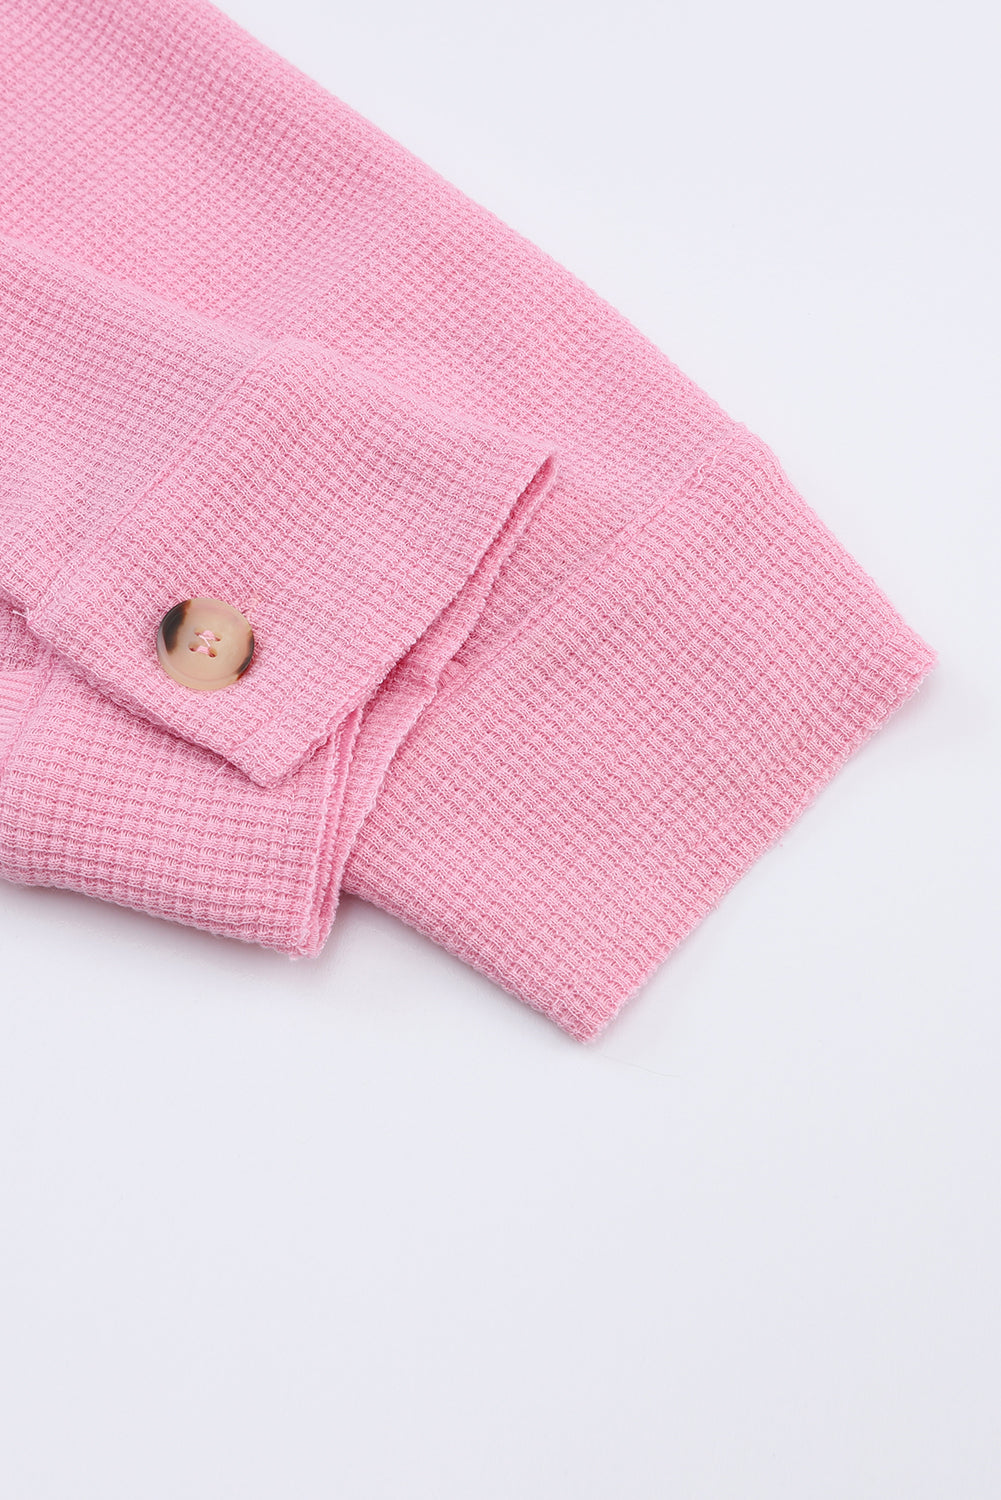 Camicia rosa taglie forti in maglia waffle con cuciture a vista